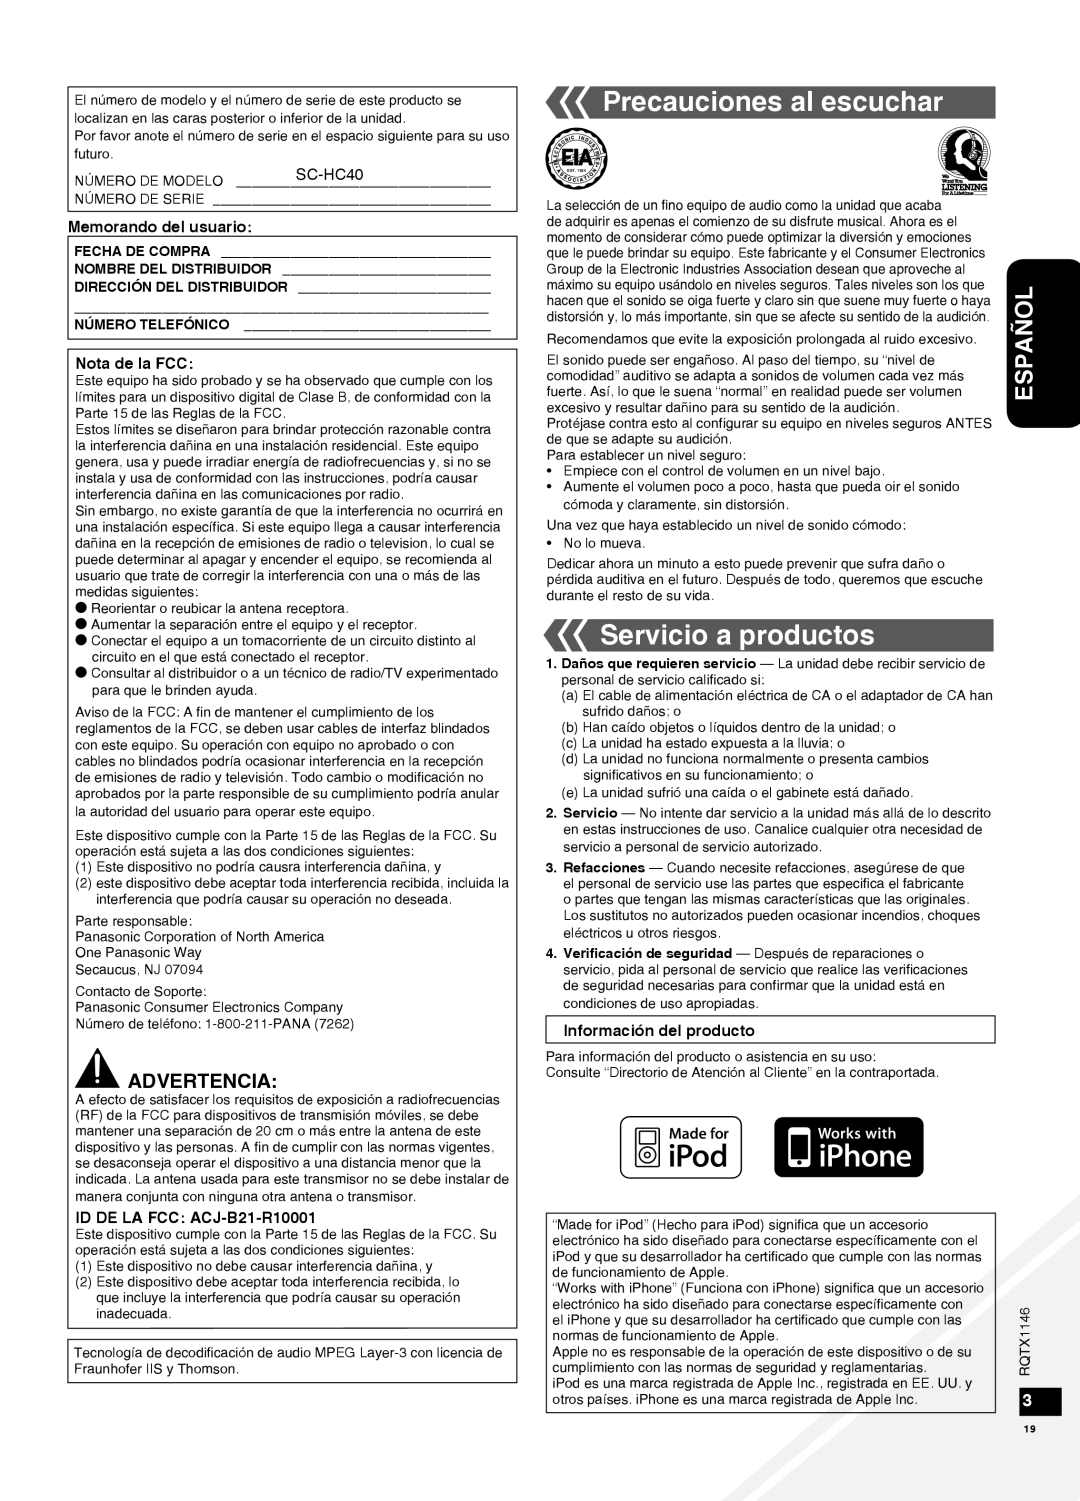 Panasonic SC-HC40 warranty Precauciones al escuchar, Servicio a productos, Advertencia, Español 